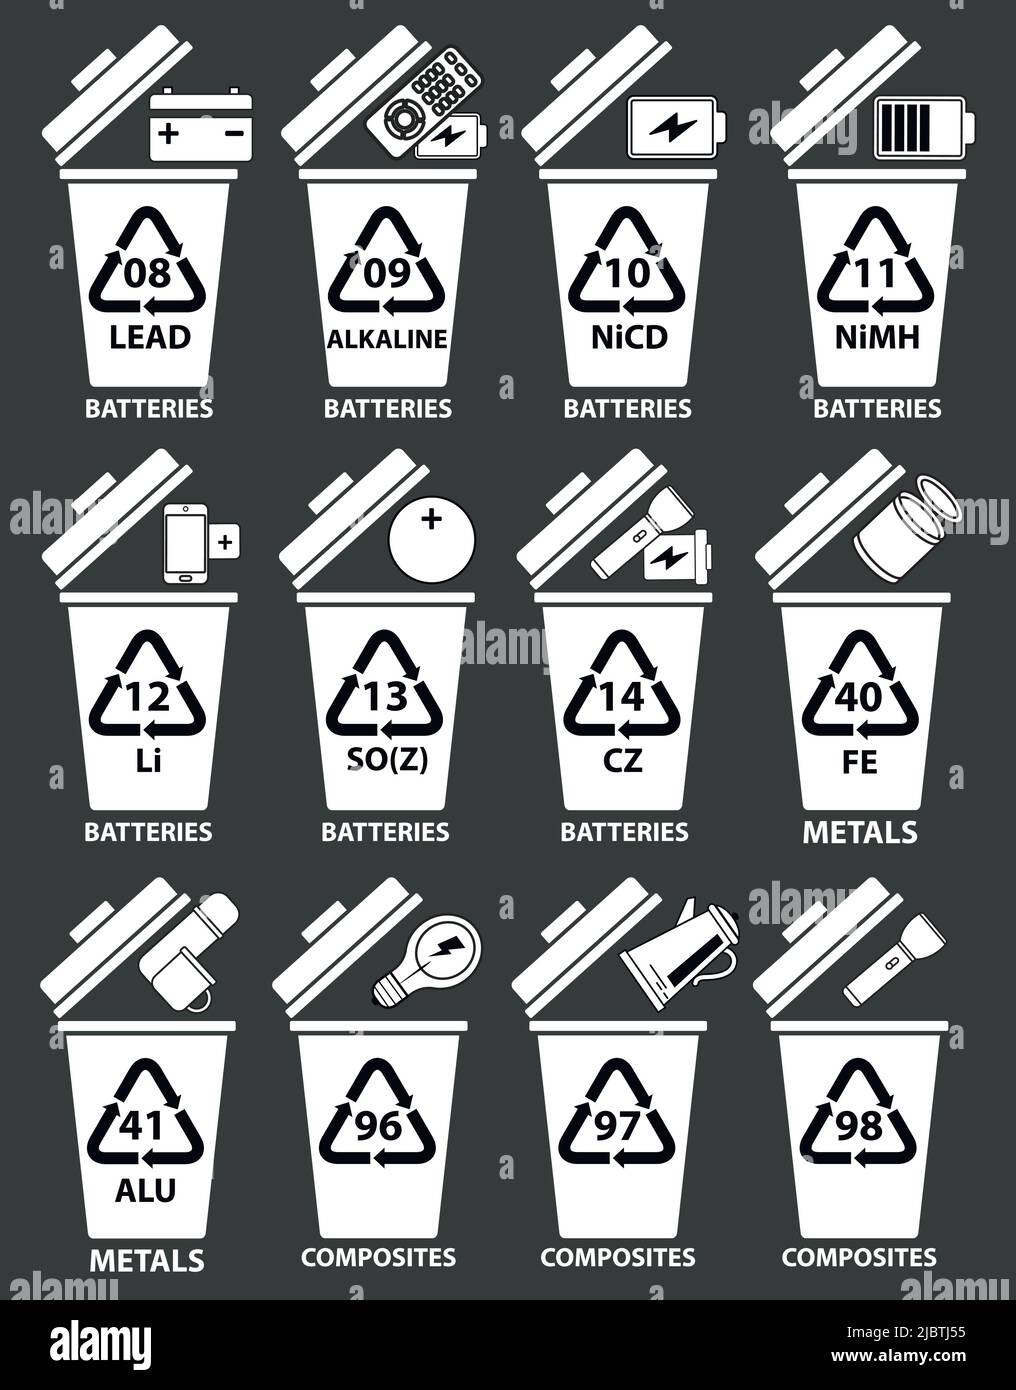 Recycling-Codes für Batterien, Metall, Verbundstoffe. Recycling-Behälter Abbildung mit Batterien, TV-Fernbedienung, Telefon, Lithium-Batterie, Taschenlampe, Glas. Stock Vektor